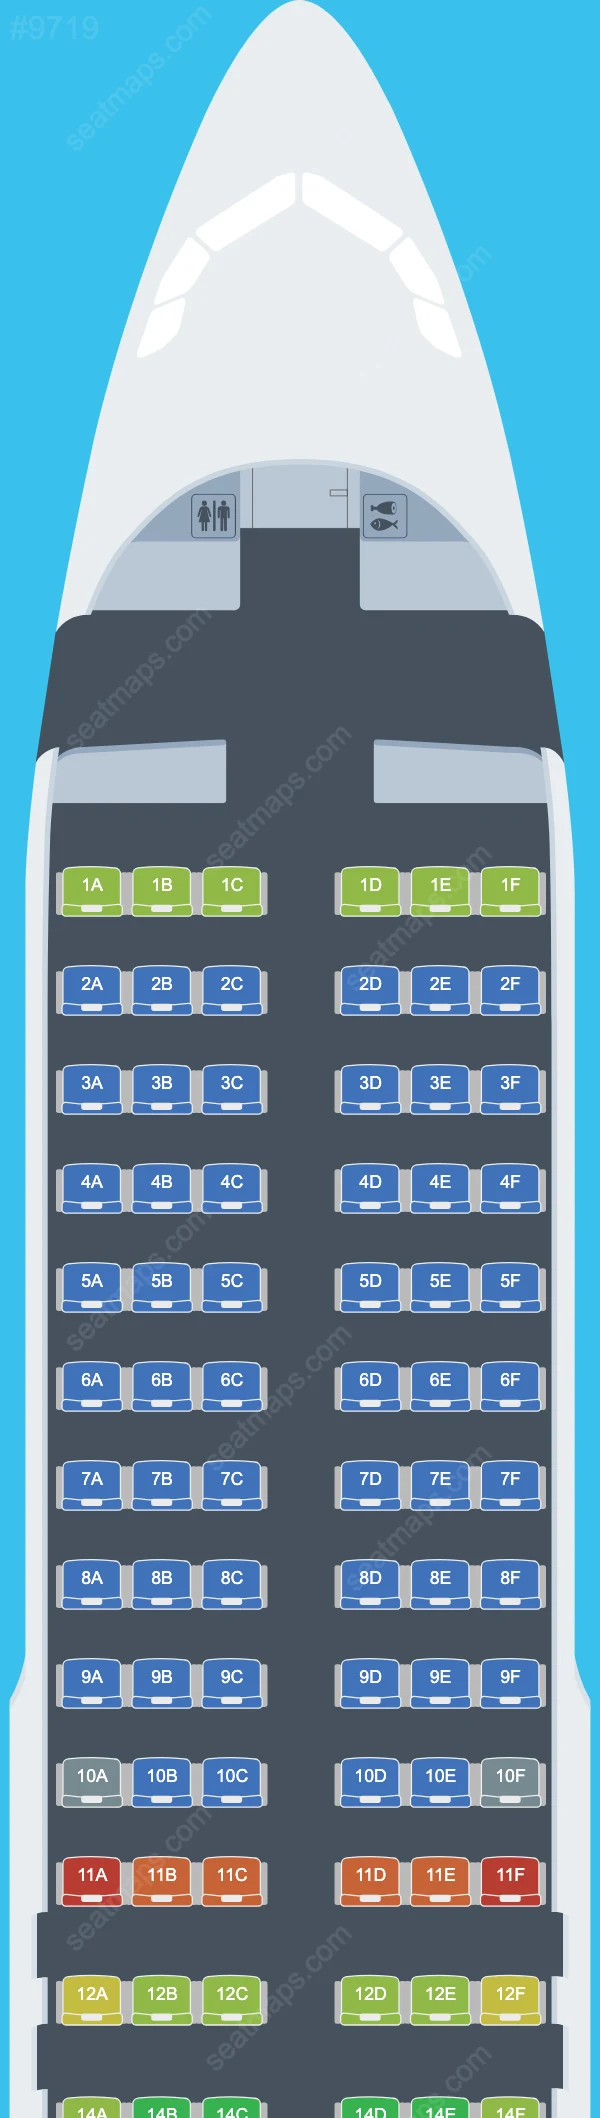 AirAsia Airbus A320 Seat Maps A320-200